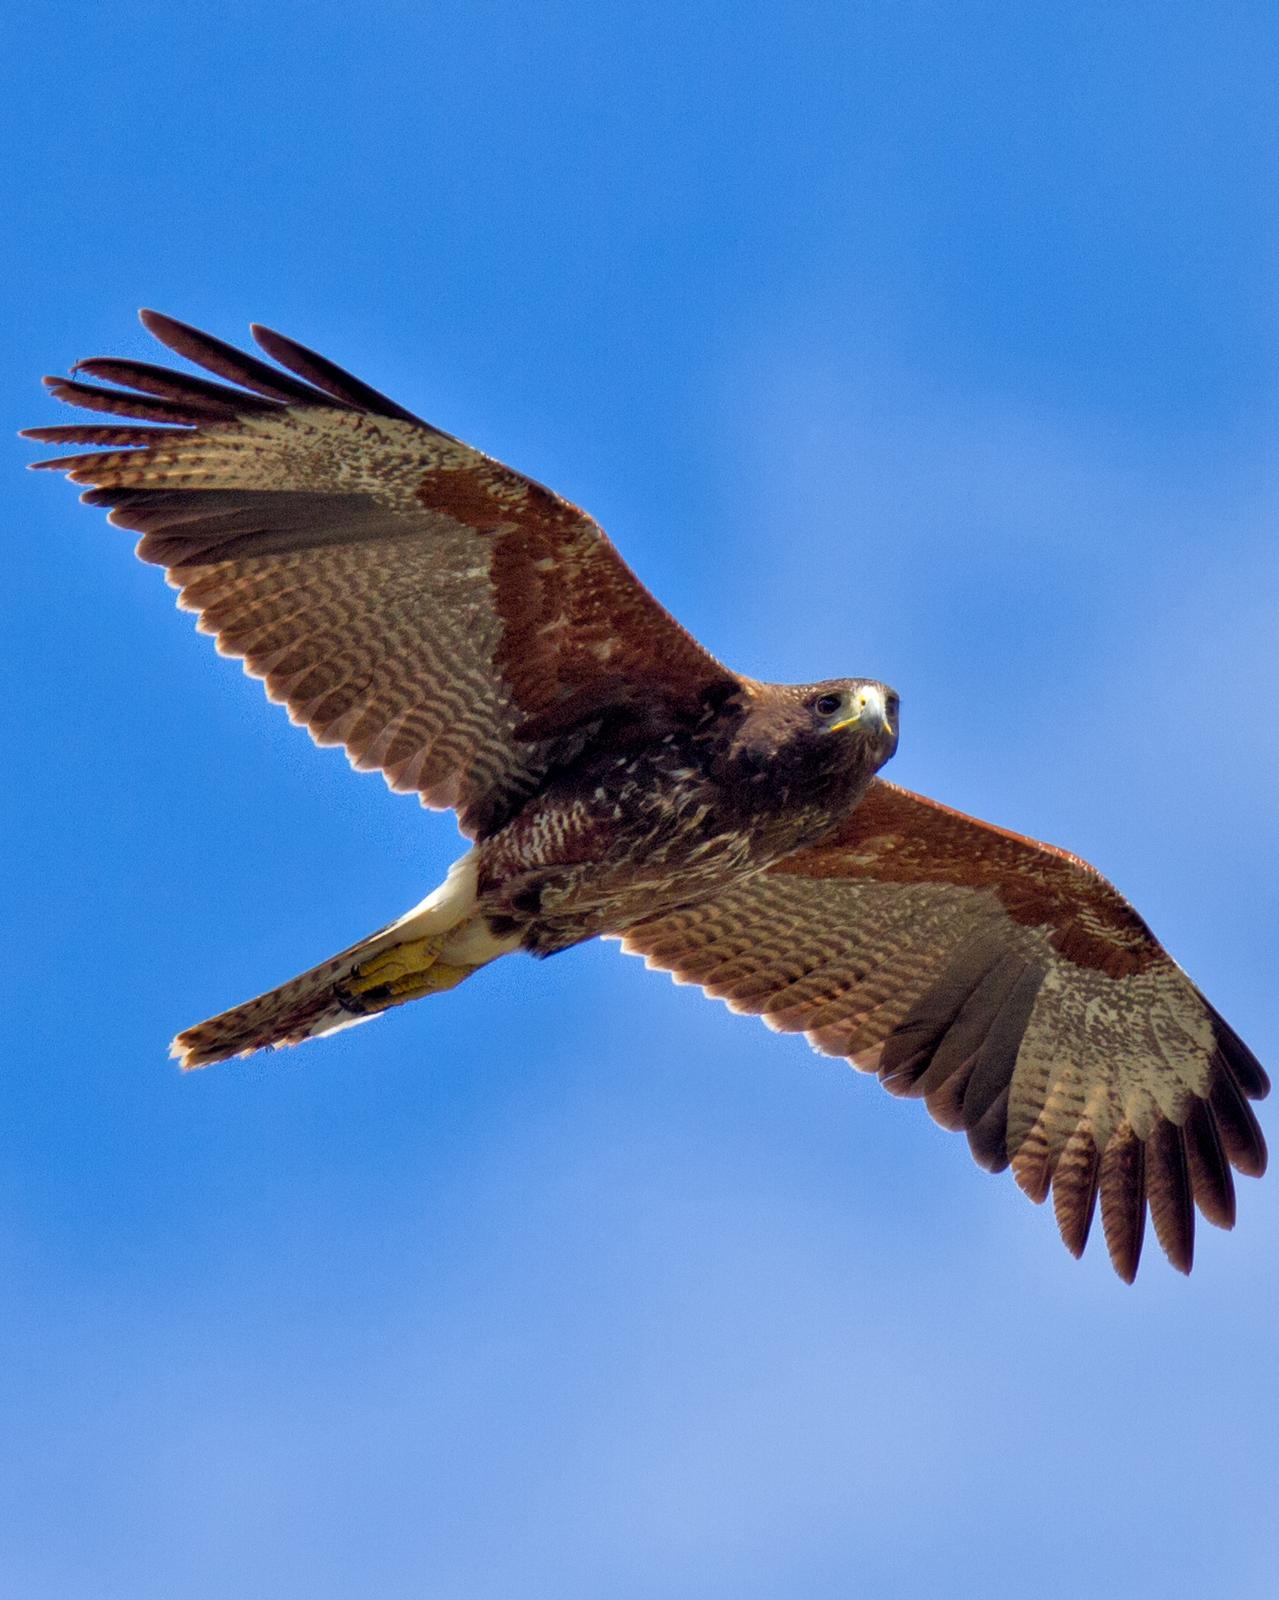 Harris's Hawk Photo by JC Knoll